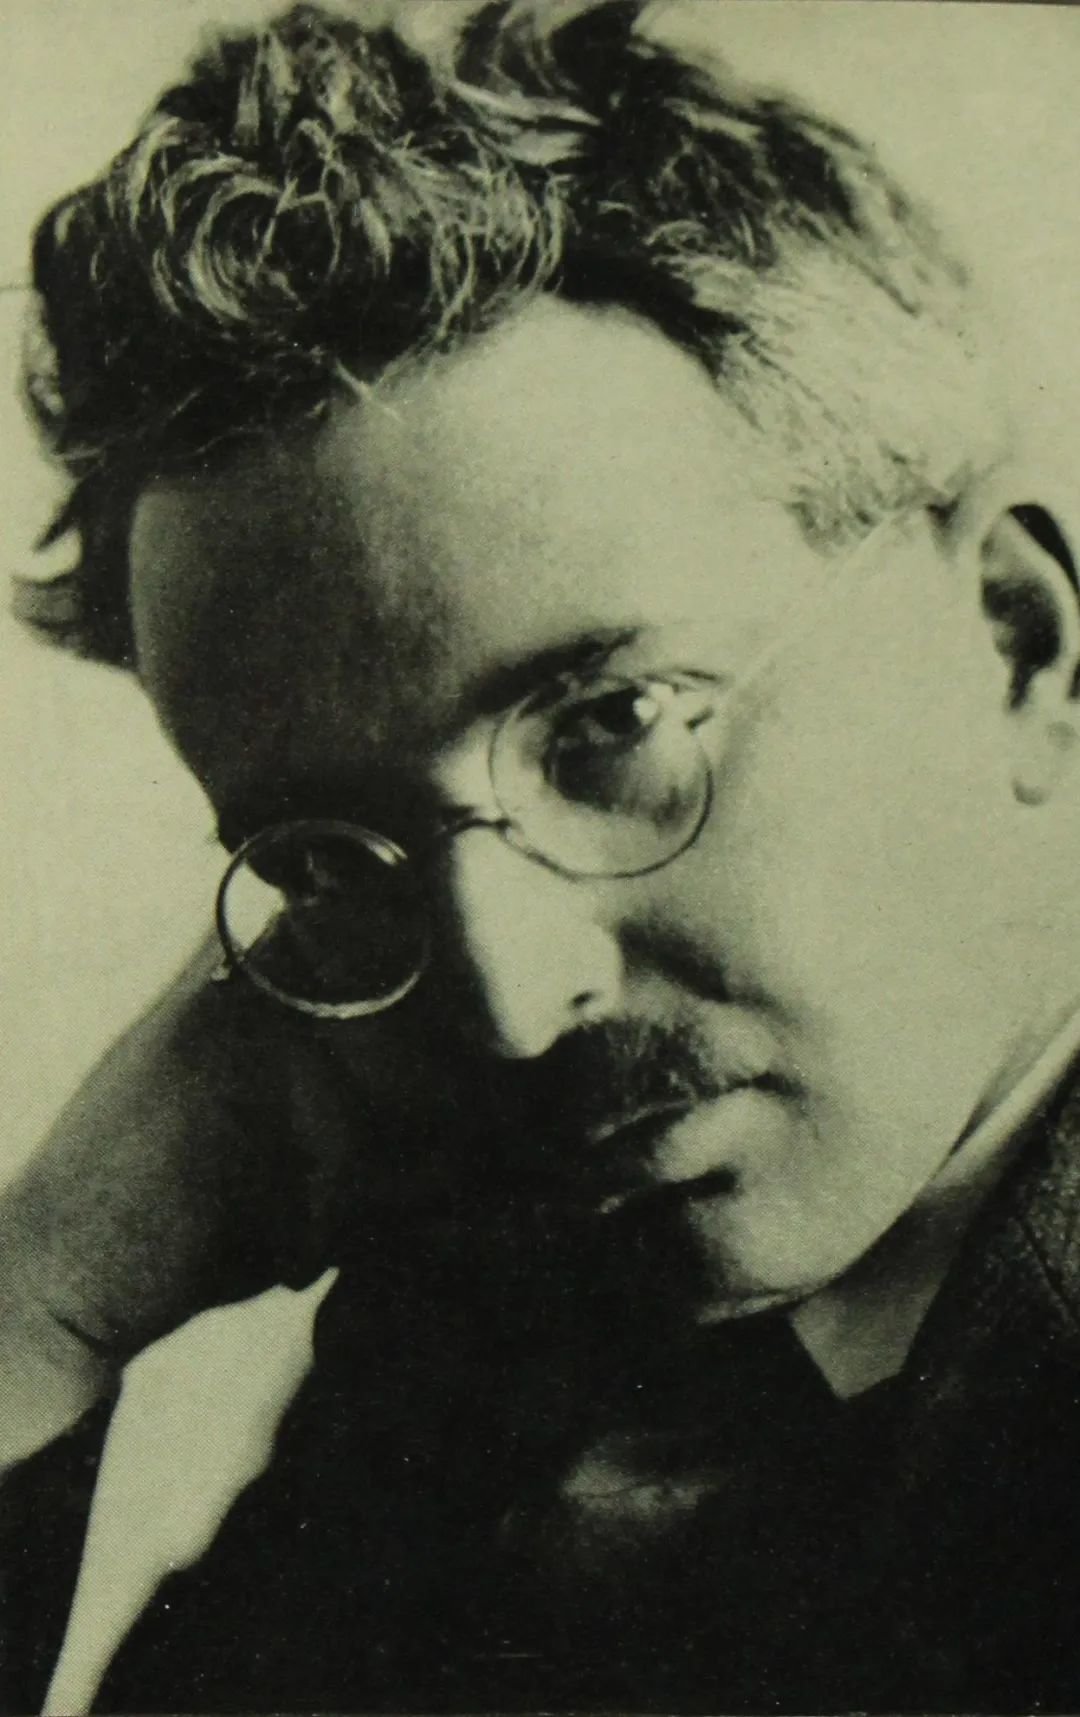 瓦尔特·本雅明（1892—1940），德国文学家、思想家，因其博学和敏锐而享誉世界，被视为20世纪前半期德国最重要的文学评论家，被誉为“欧洲最后一位知识分子”。